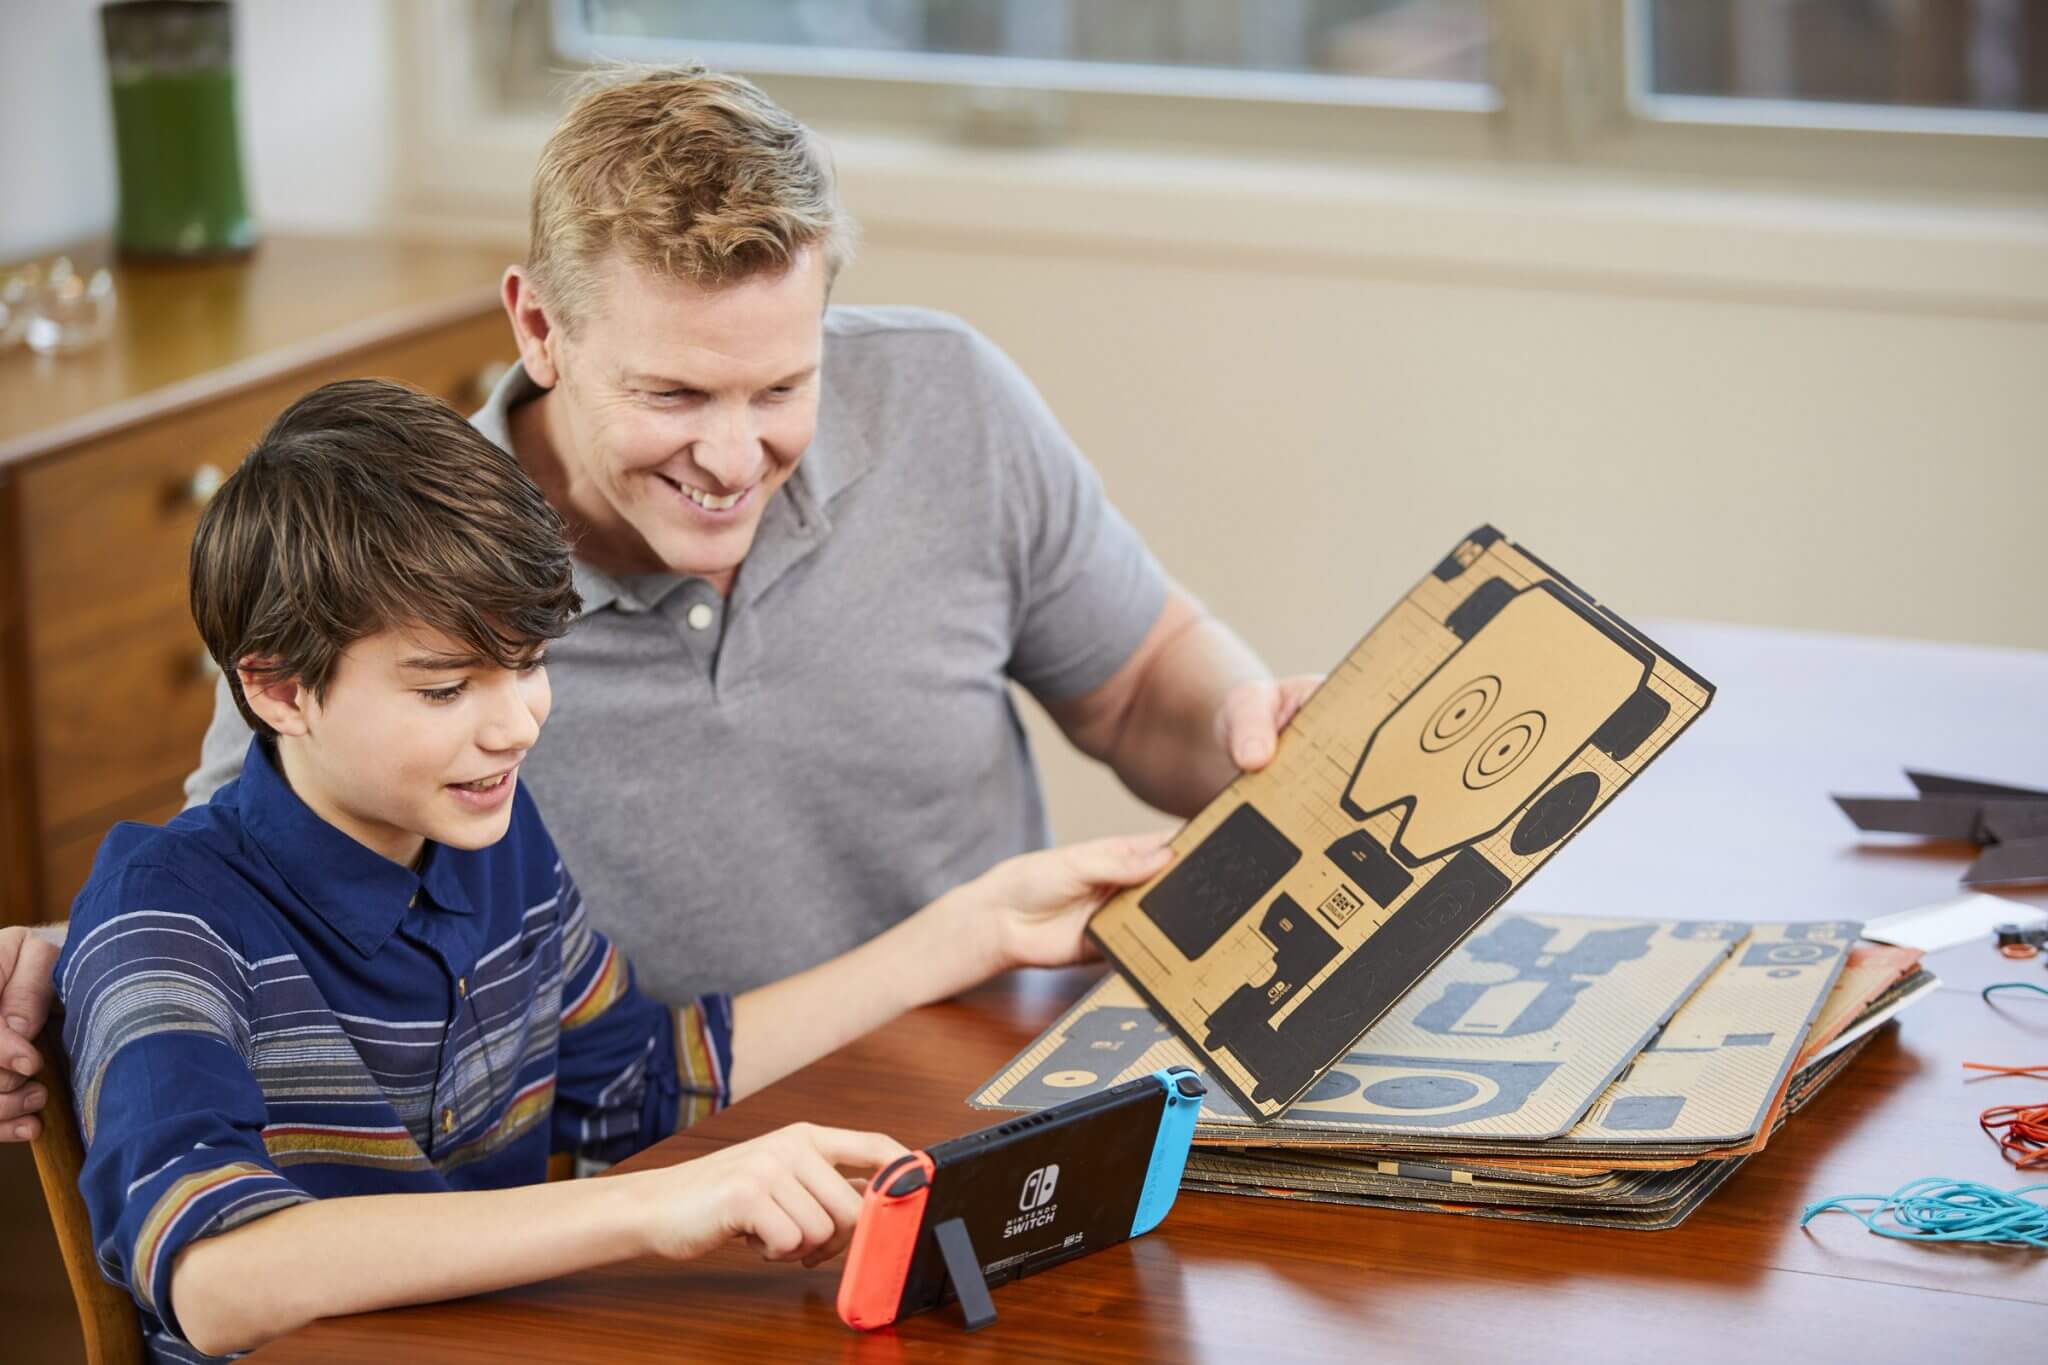 Nintendo labo é a nova forma de brincar e interagir com o switch. A big n convida crianças e todos com o coração jovem a experimentarem uma nova e divertida forma de jogar games no switch.